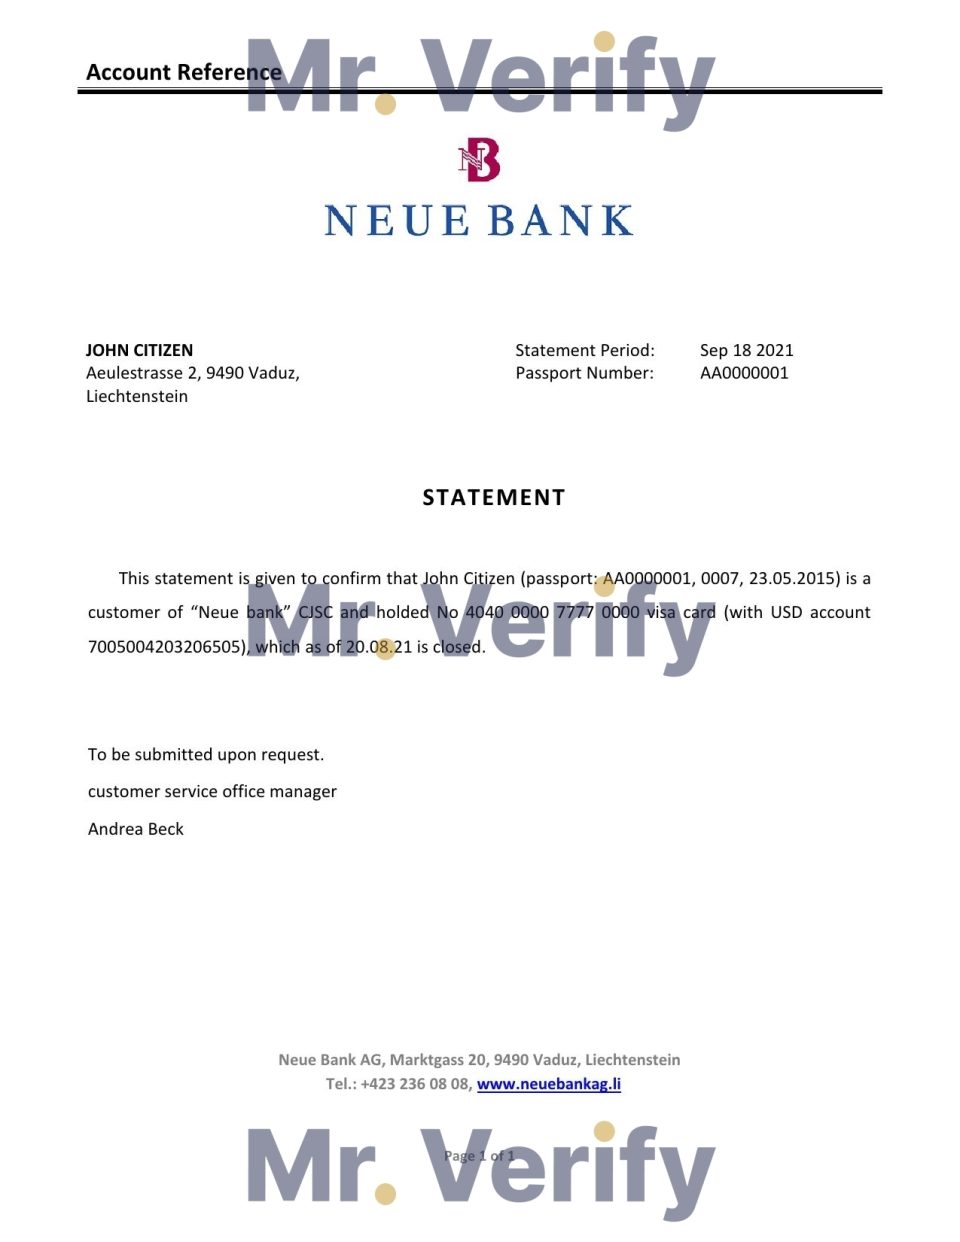 Download Liechtenstein Neue Bank Reference Letter Templates | Editable Word